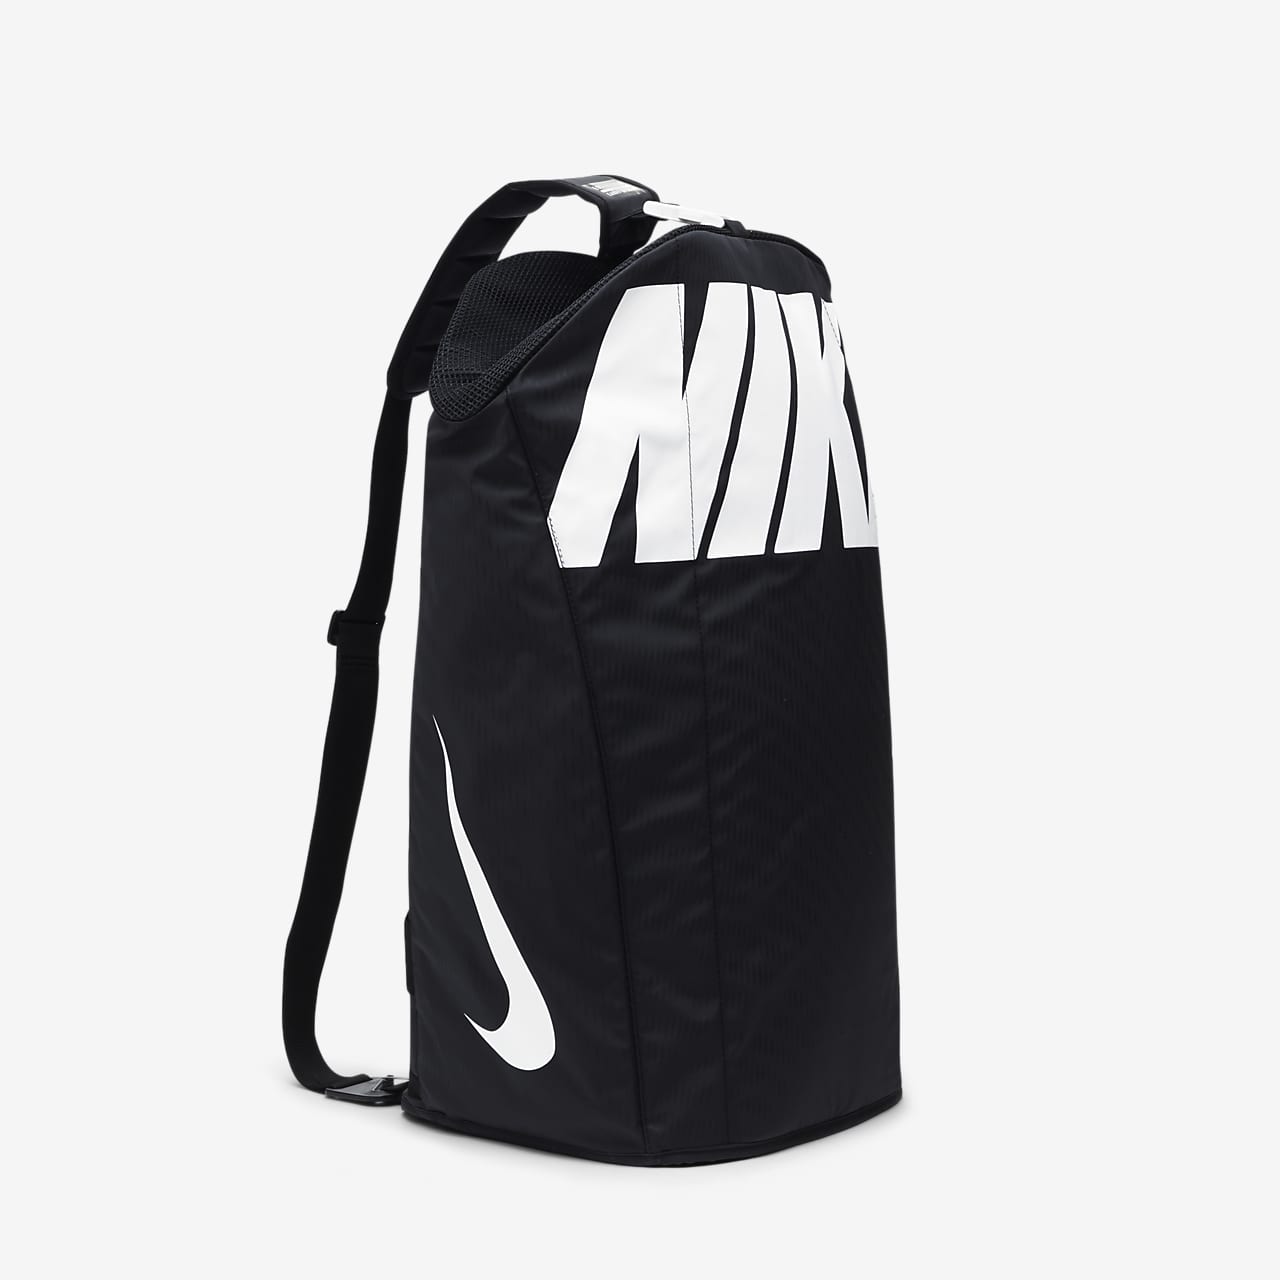 alpha adapt nike backpack